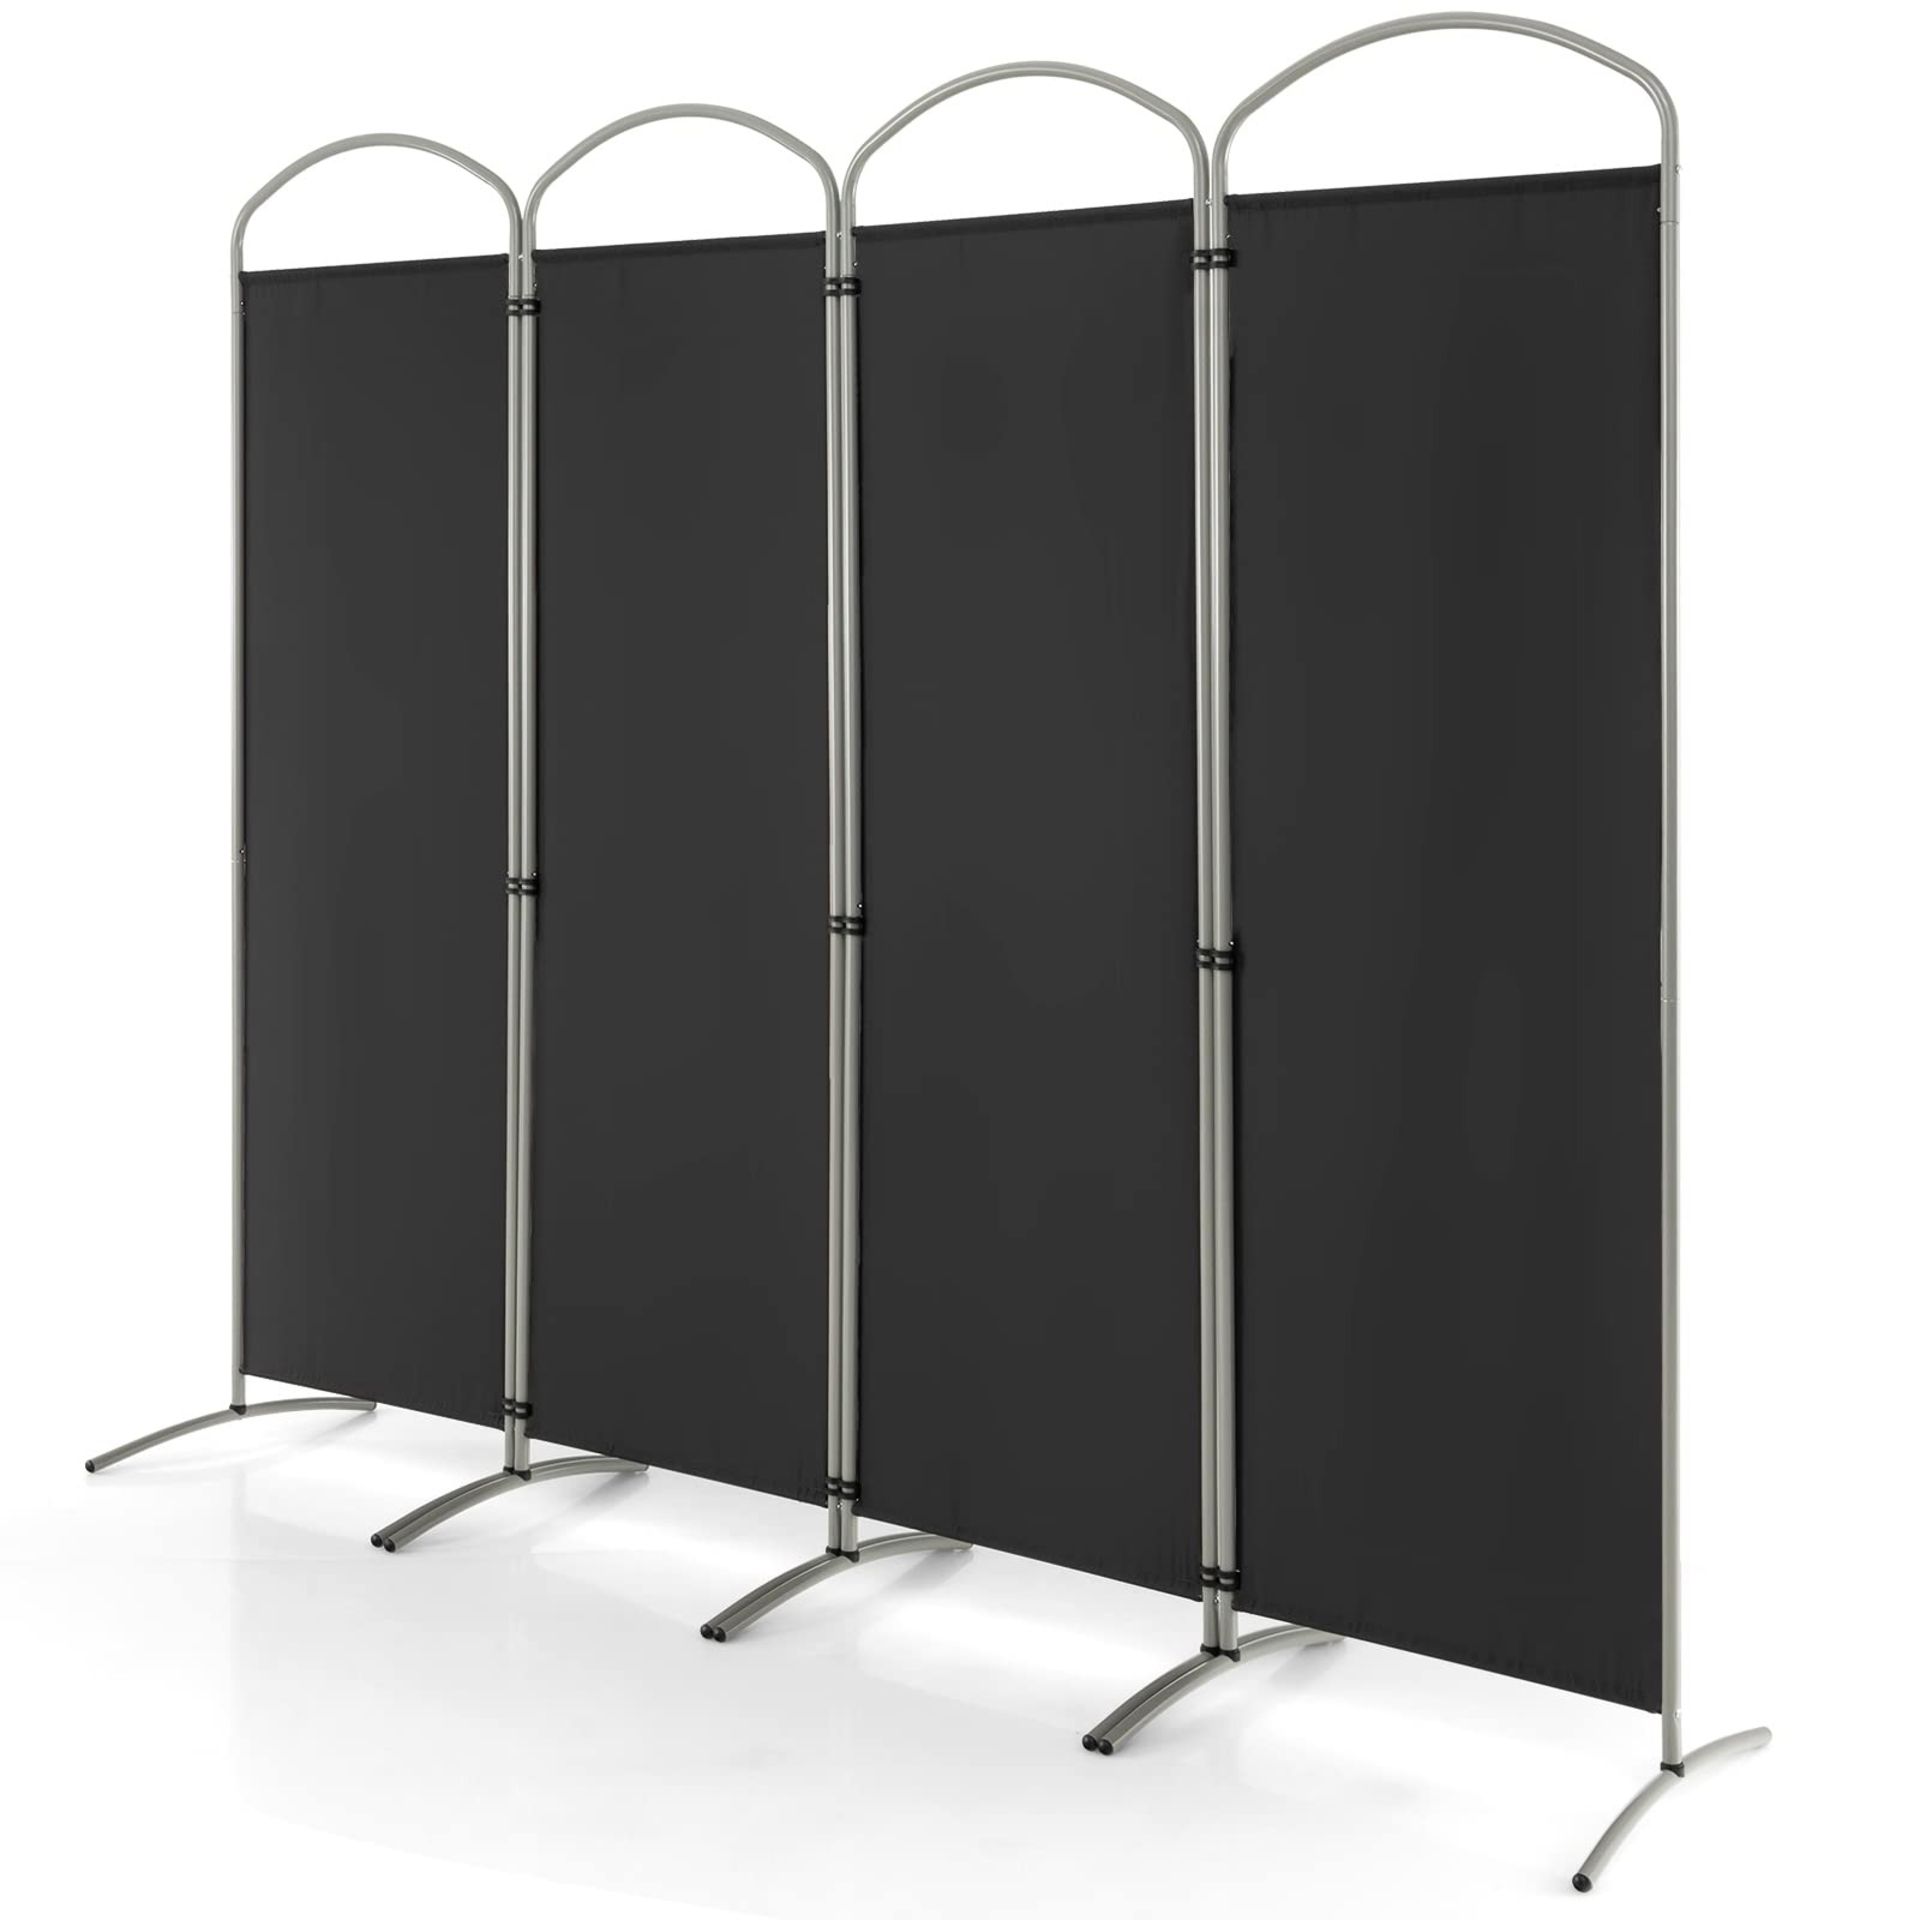 6"4 Panel Folding Room Divider Freestanding - ER54